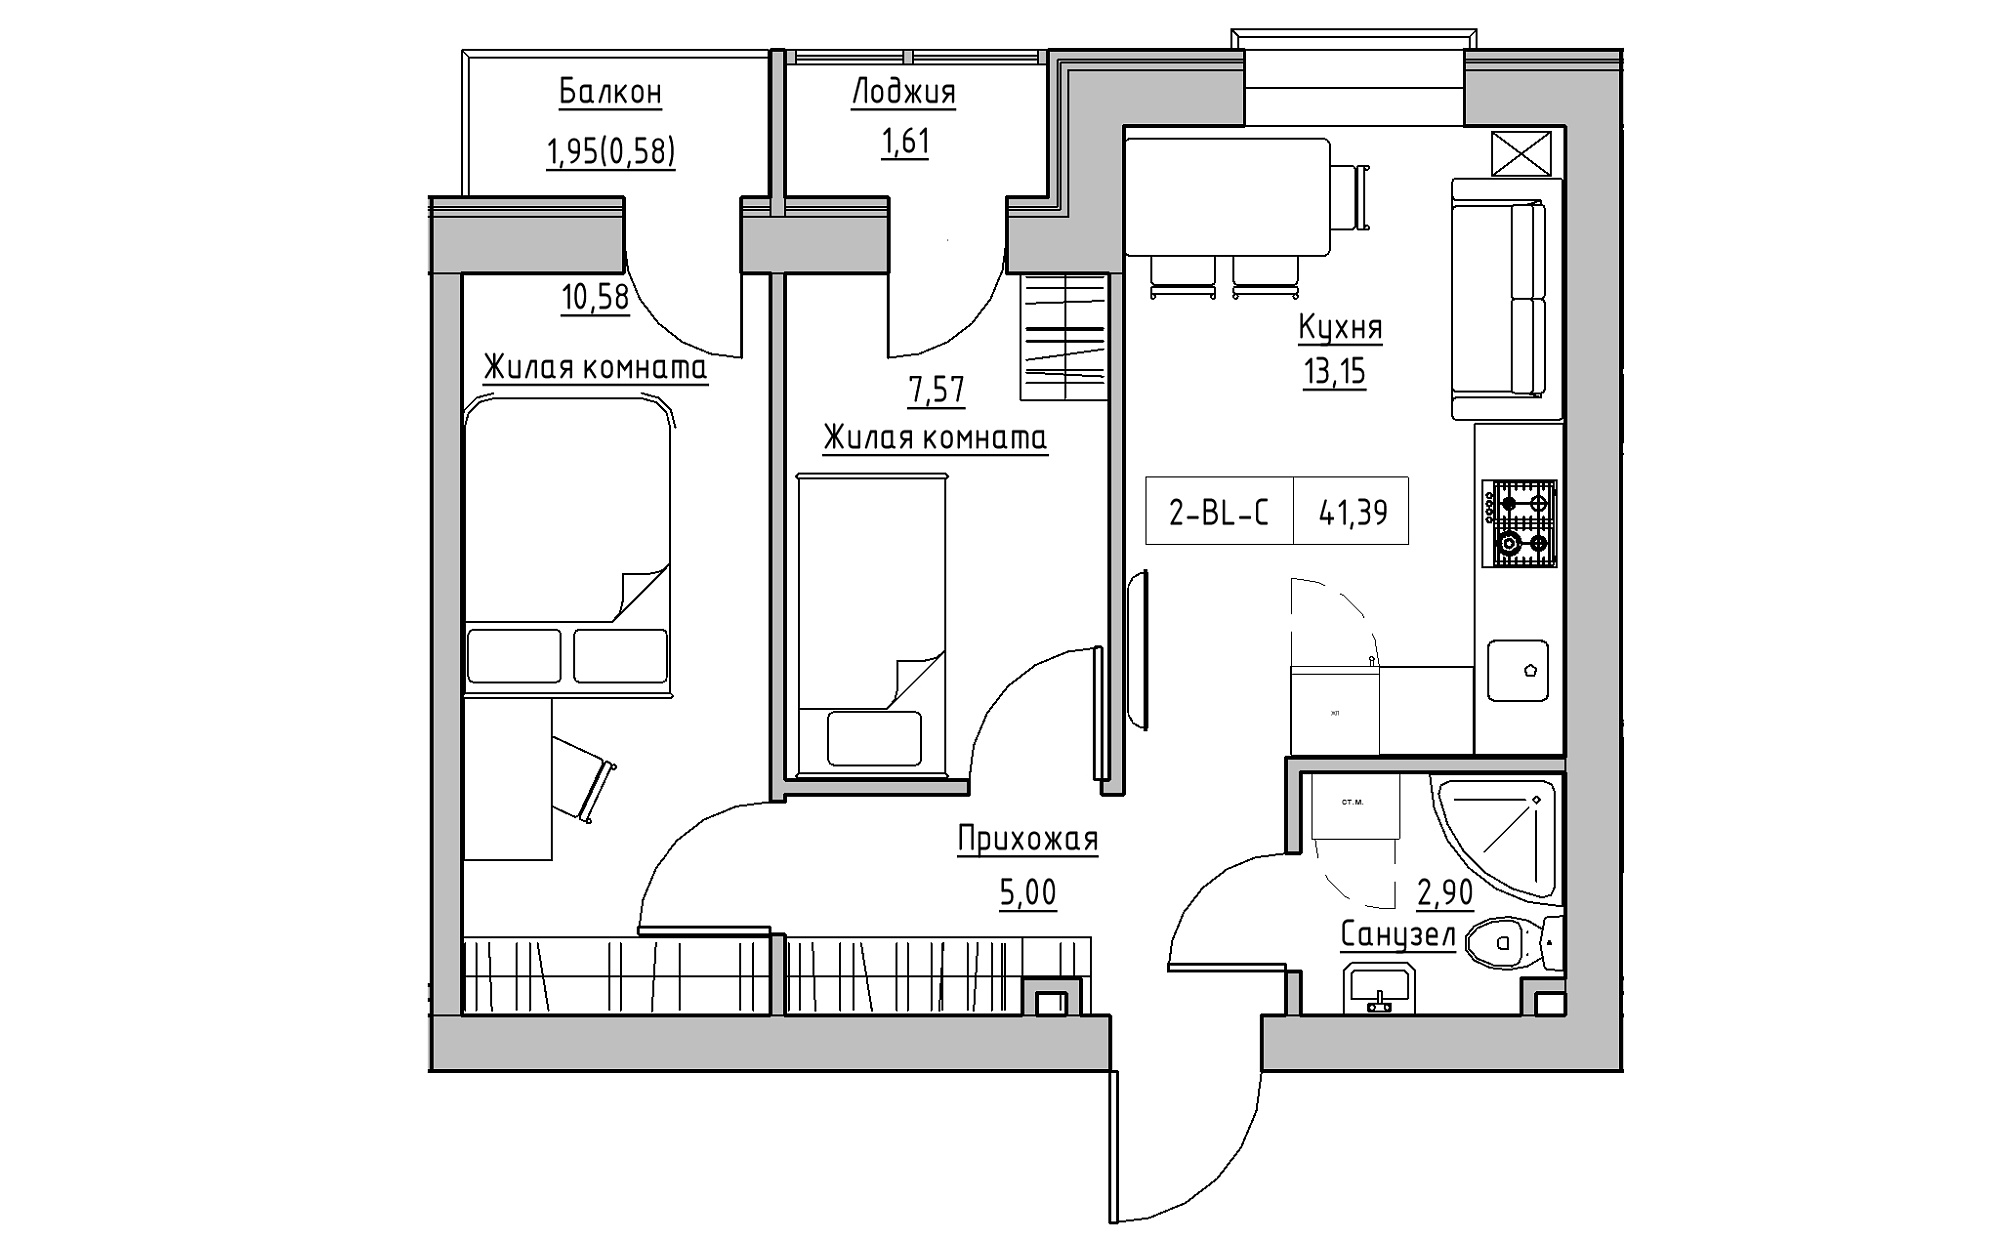 Планировка 2-к квартира площей 41.39м2, KS-022-03/0005.